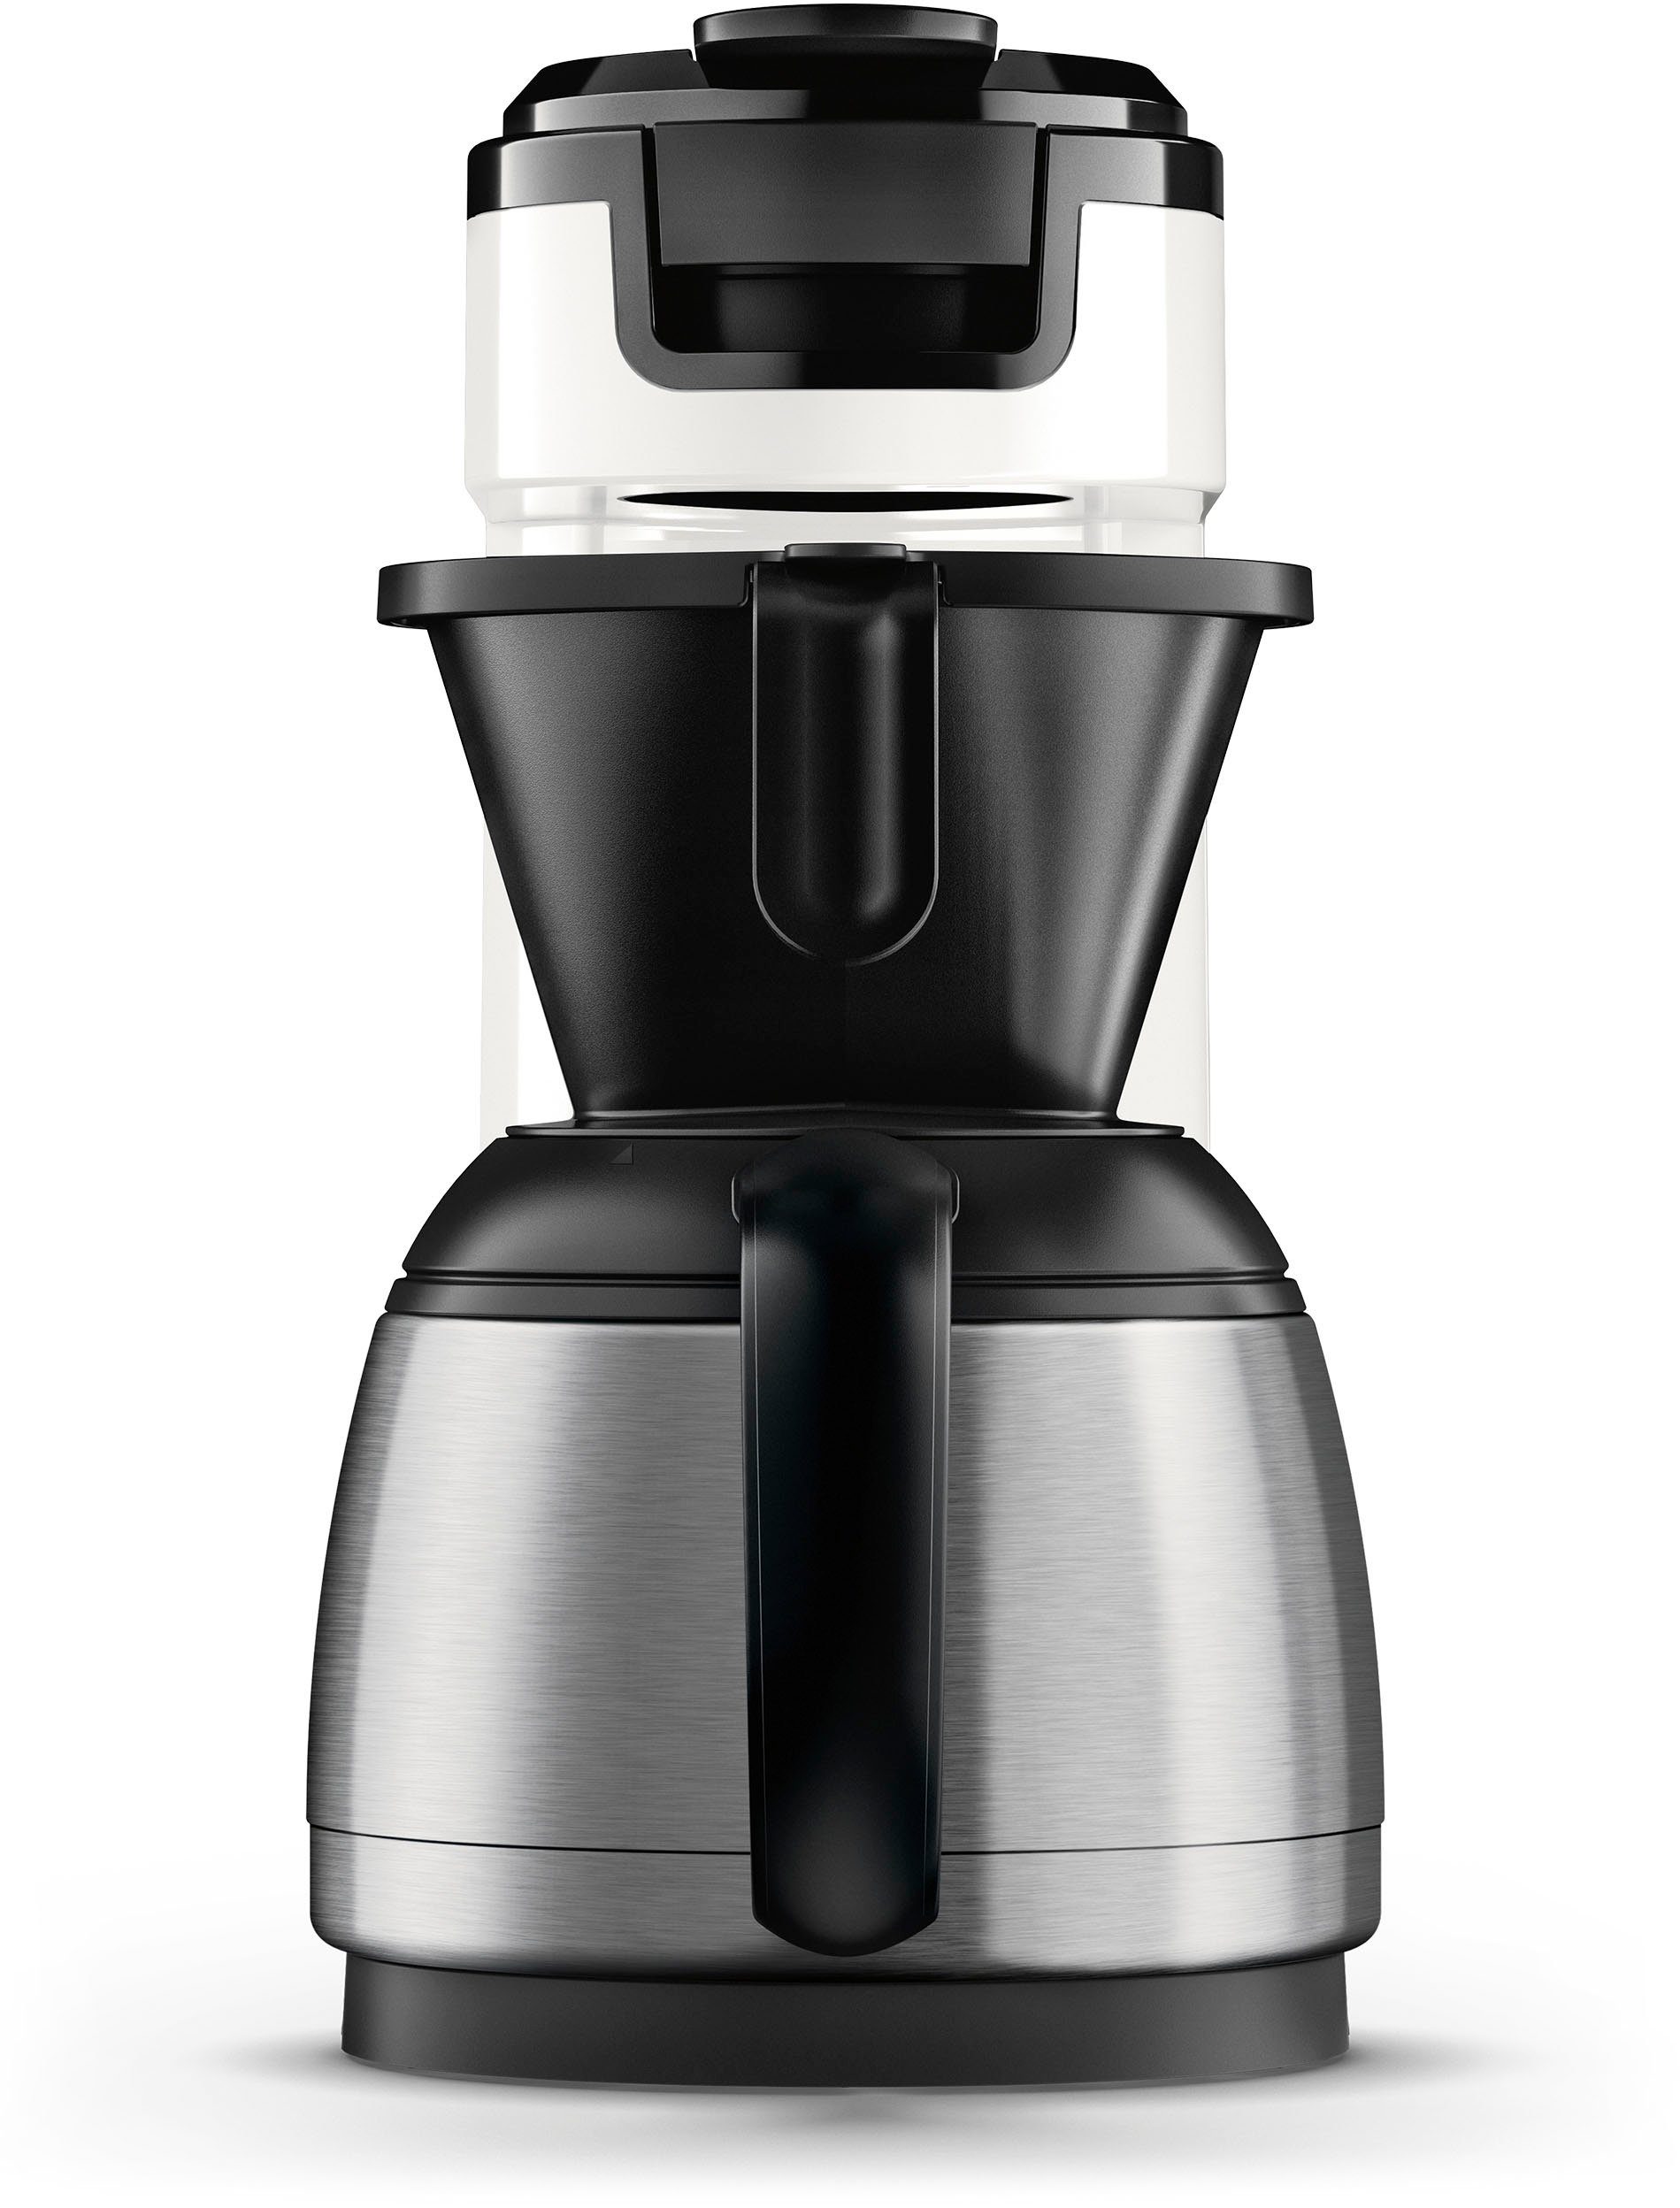 1l im Kaffeekanne, Switch 9,90 € Philips HD6592/04, UVP Kaffeepaddose Wert von Kaffeepadmaschine inkl. Senseo